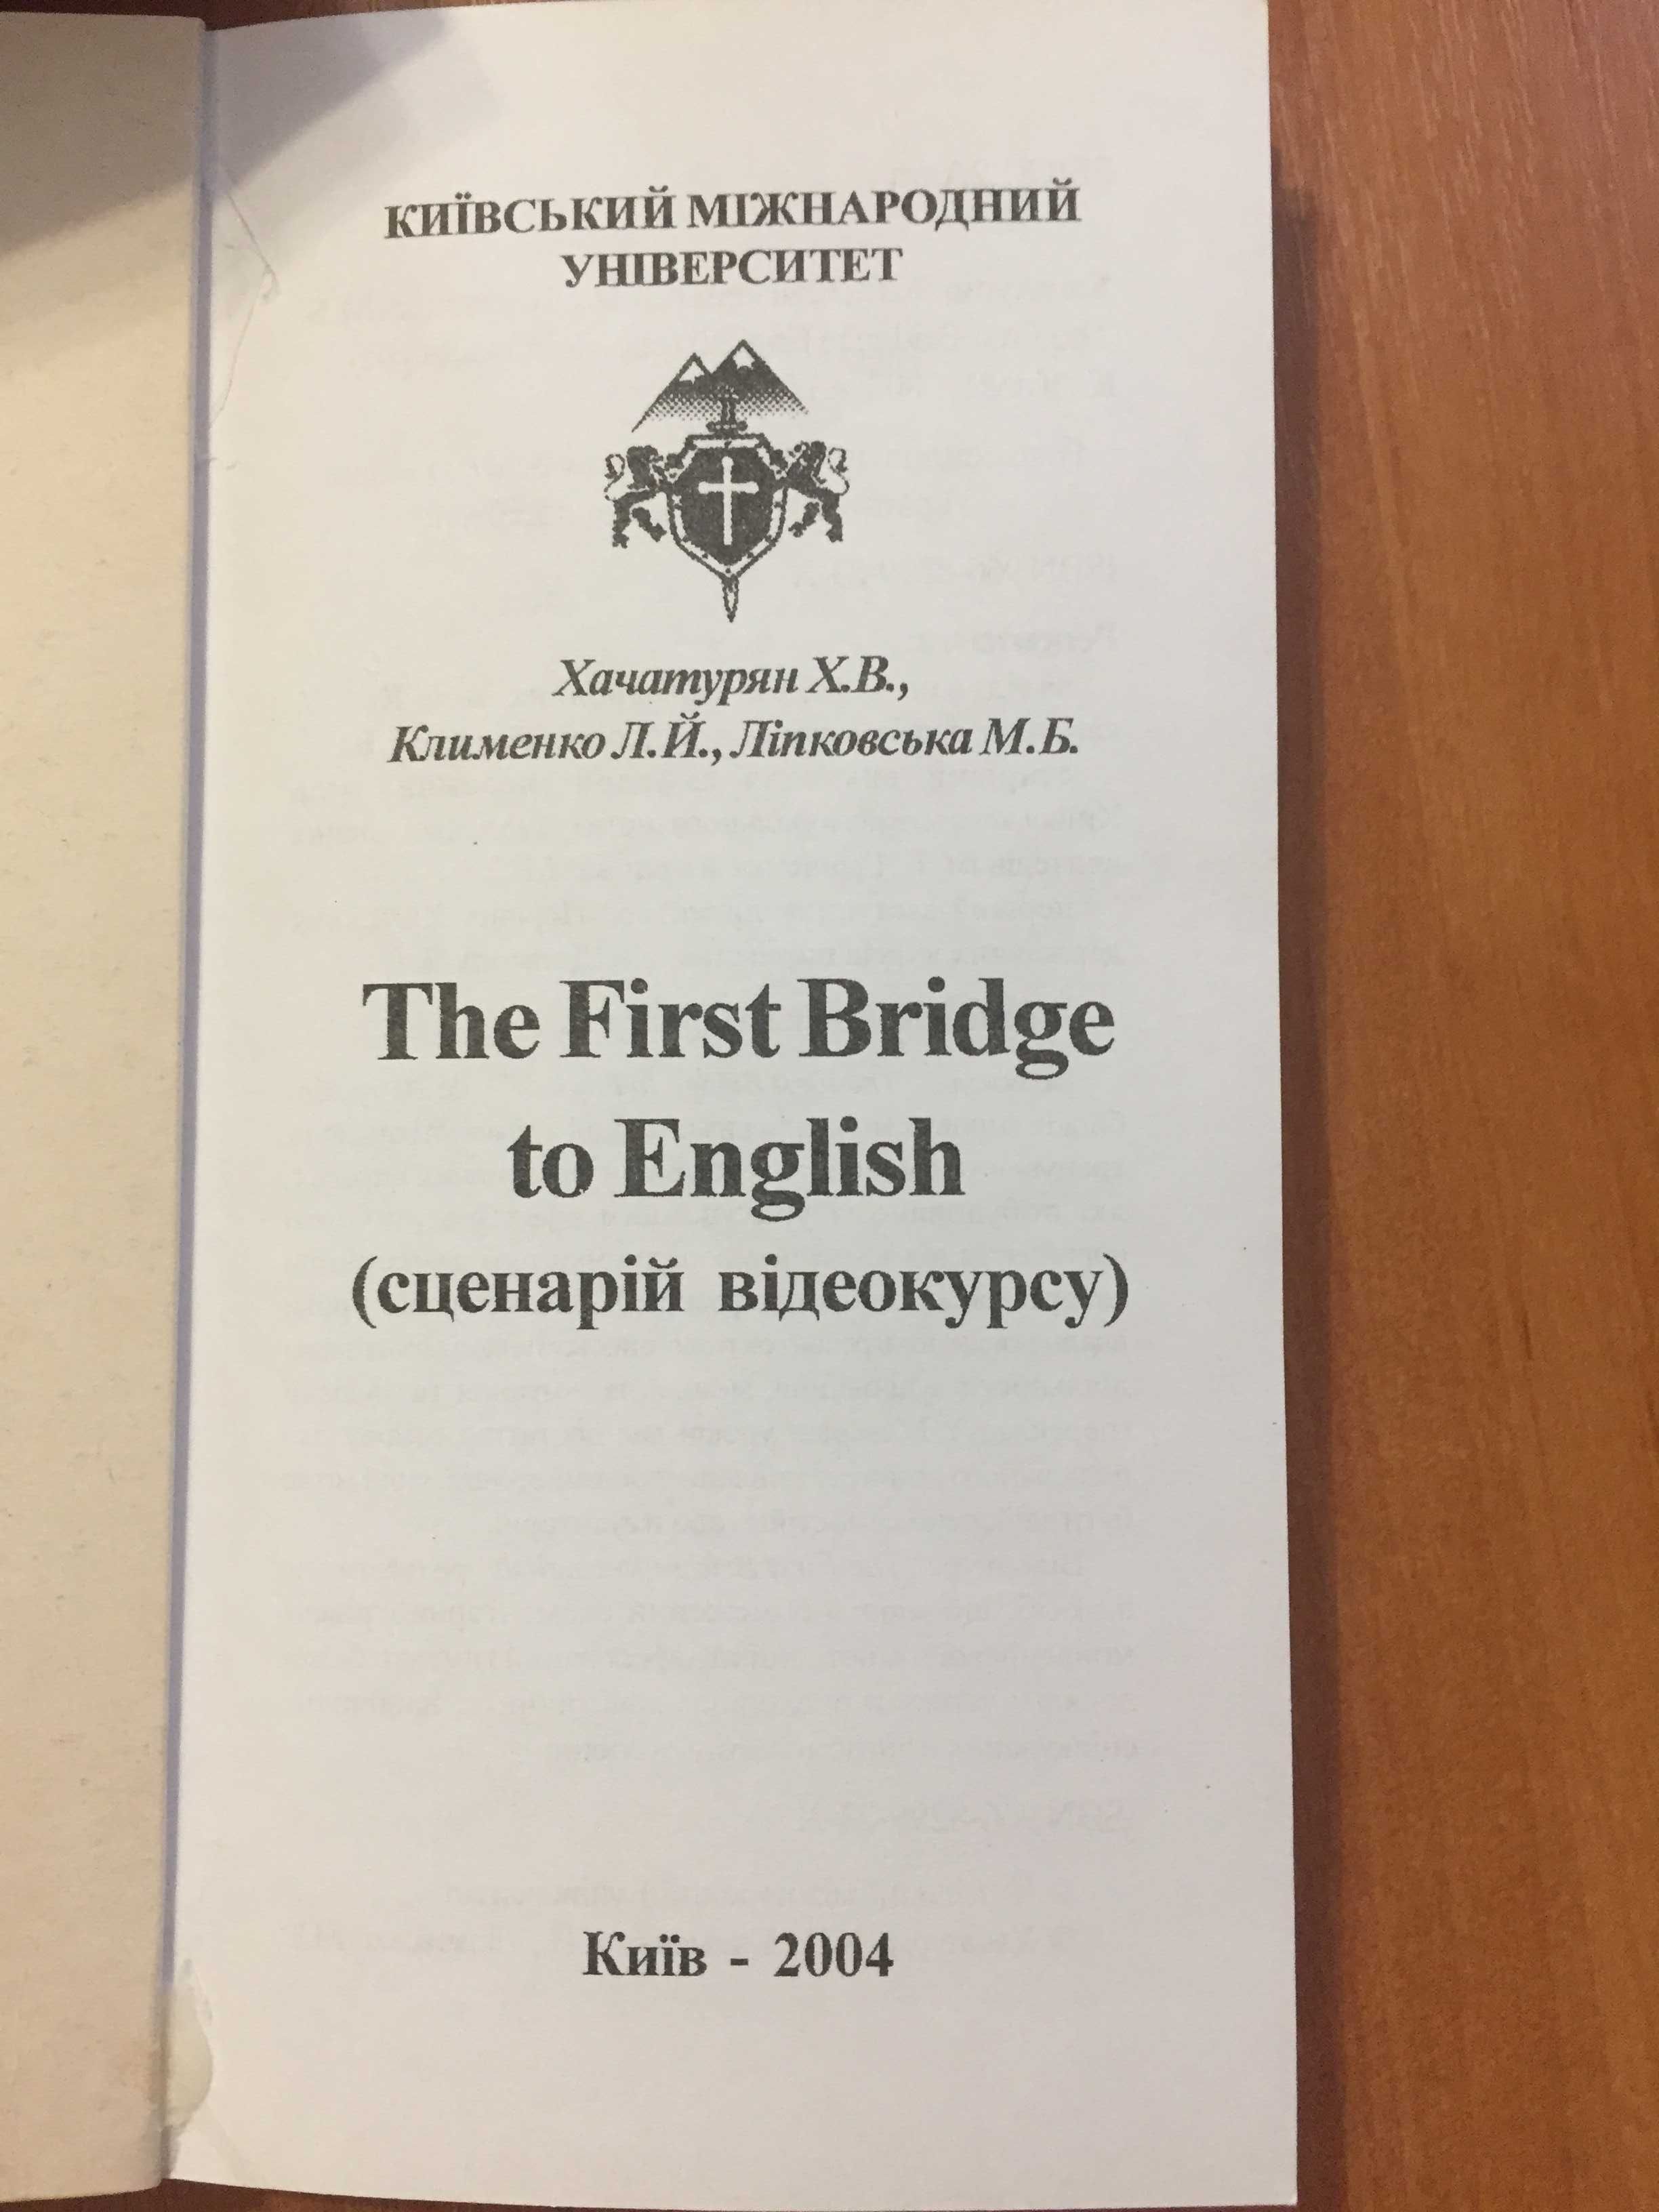 Відеокурс «The First Bridge to English», елементар. рівень спілкування